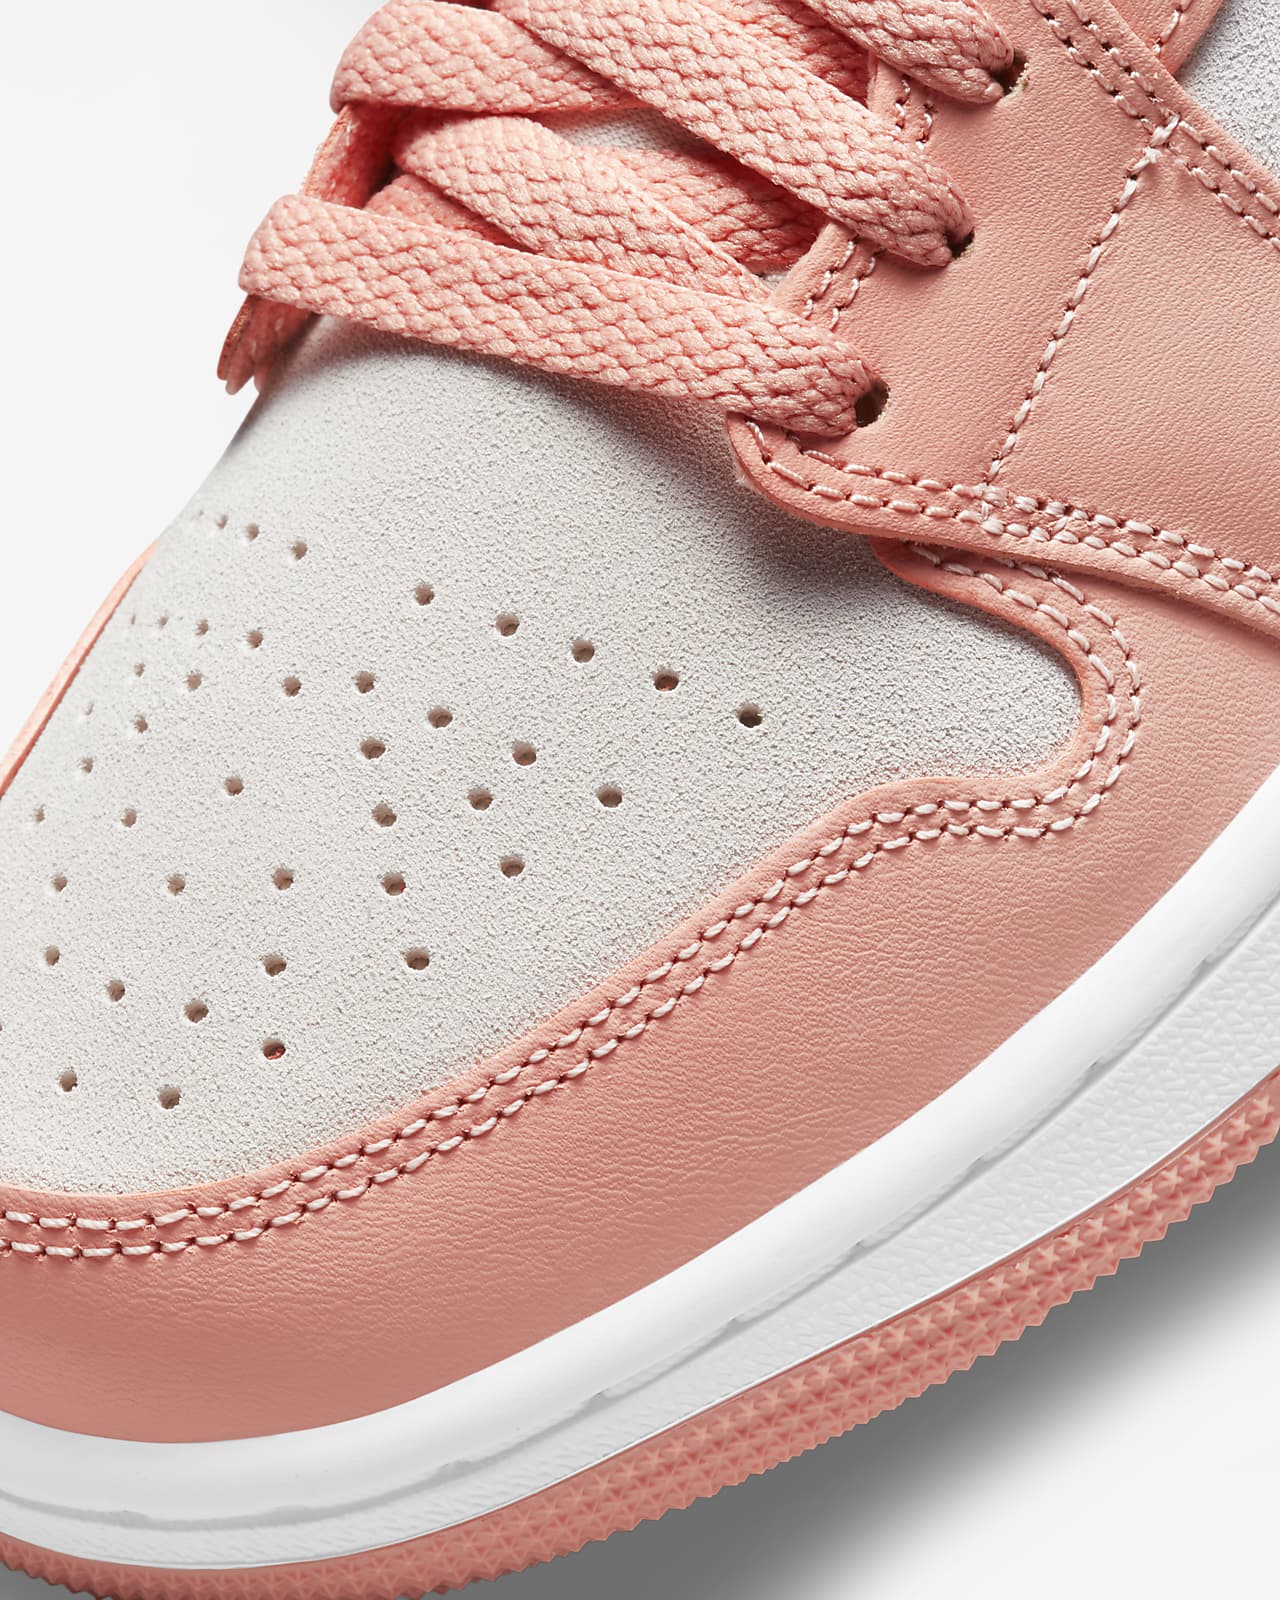 Air Jordan 1 pink jordan 1 low Low Women's Shoe. Nike MY